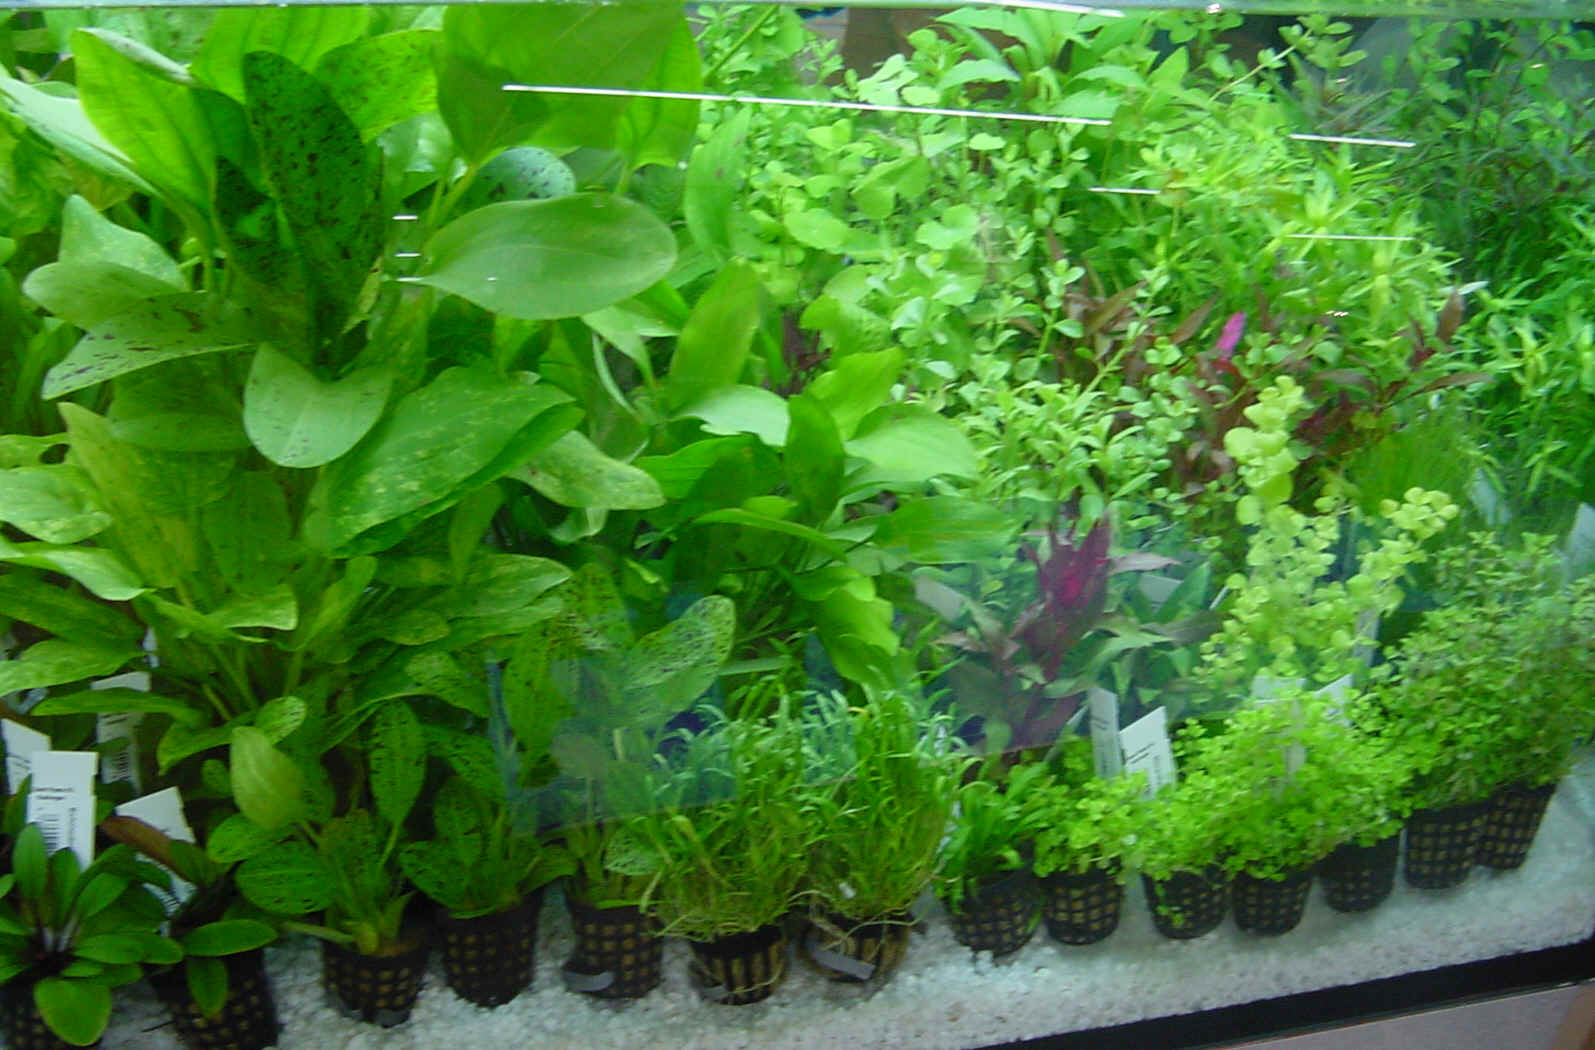 planted aquarium